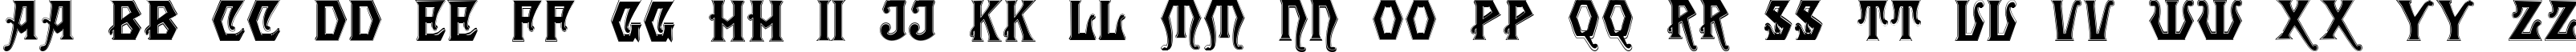 Пример написания английского алфавита шрифтом Angular Inline